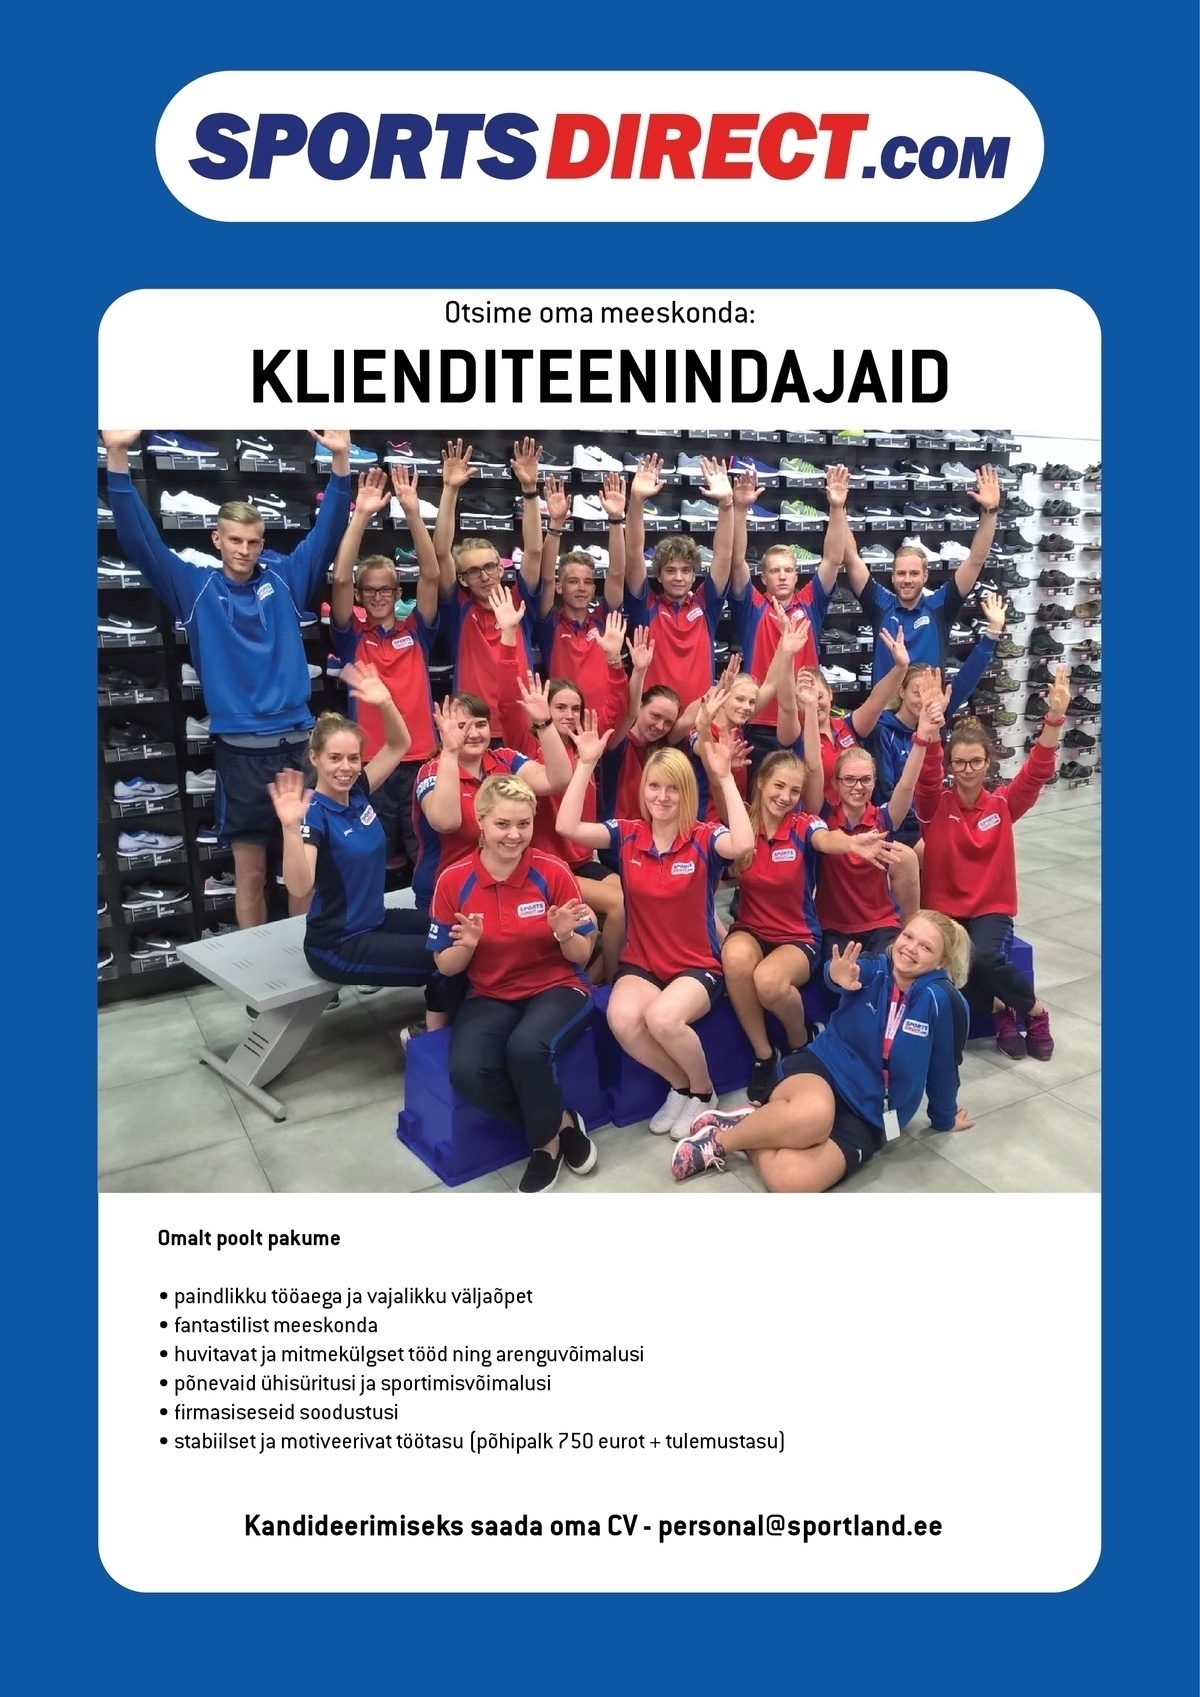 Sportland Eesti AS SPORTSDIRECT.com Kristiine keskuse klienditeenindaja